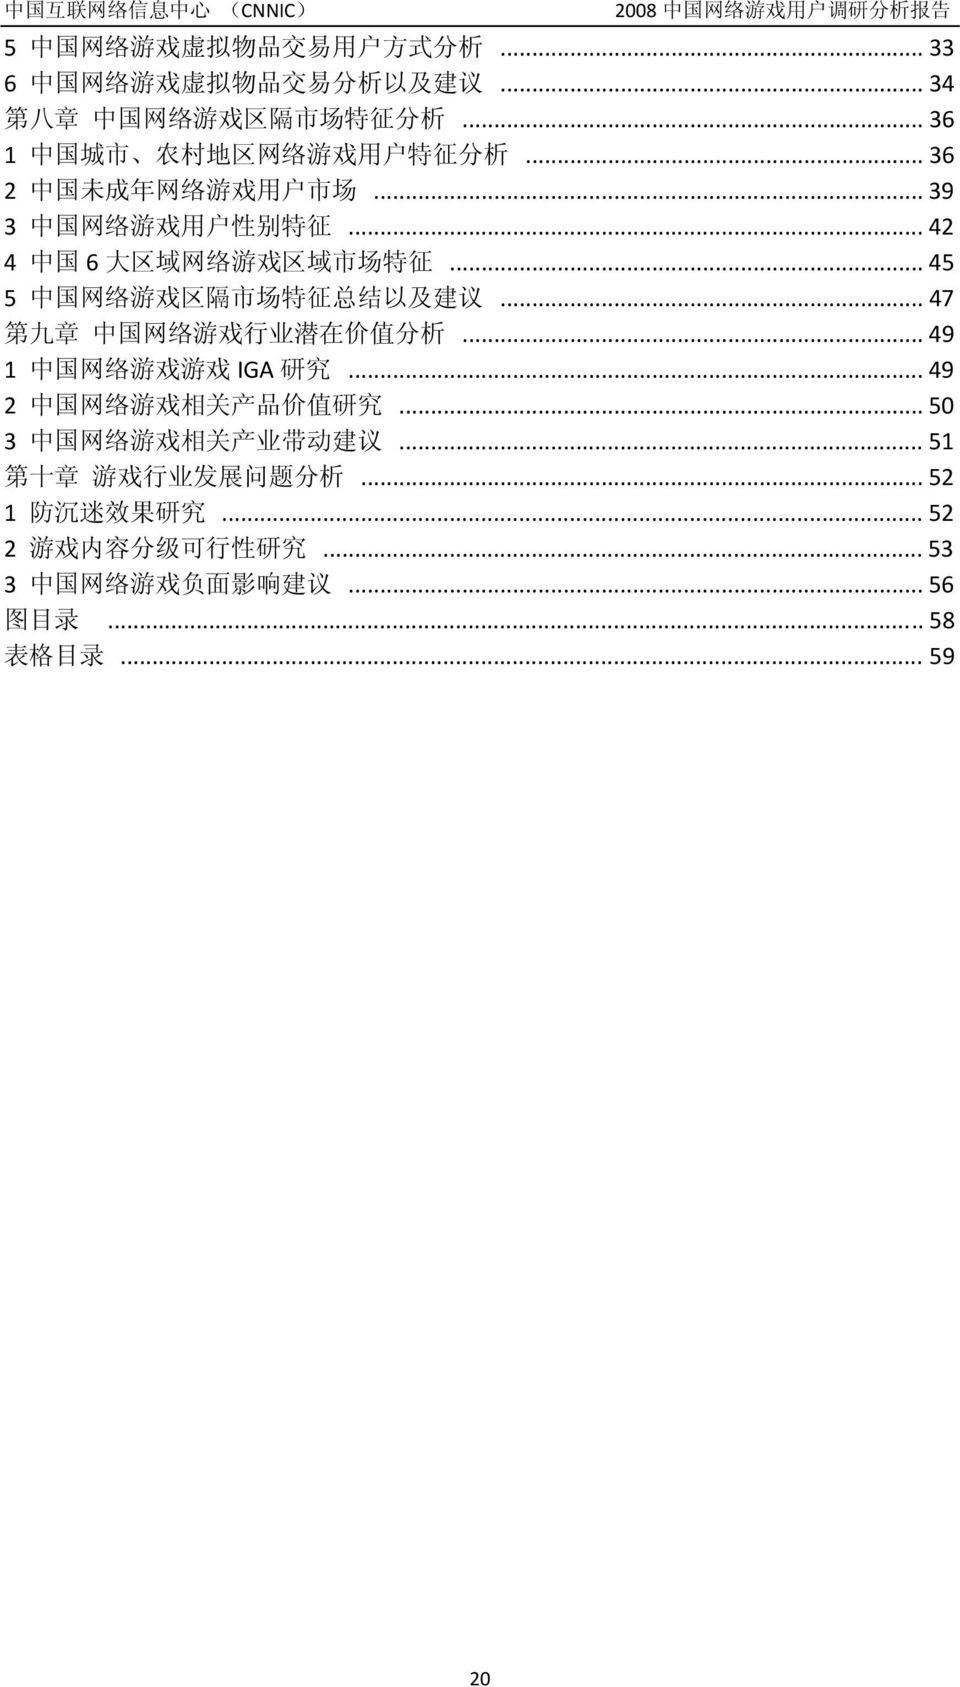 .. 45 5 中 国 网 络 游 戏 区 隔 市 场 特 征 总 结 以 及 建 议... 47 第 九 章 中 国 网 络 游 戏 行 业 潜 在 价 值 分 析... 49 1 中 国 网 络 游 戏 游 戏 IGA 研 究... 49 2 中 国 网 络 游 戏 相 关 产 品 价 值 研 究.